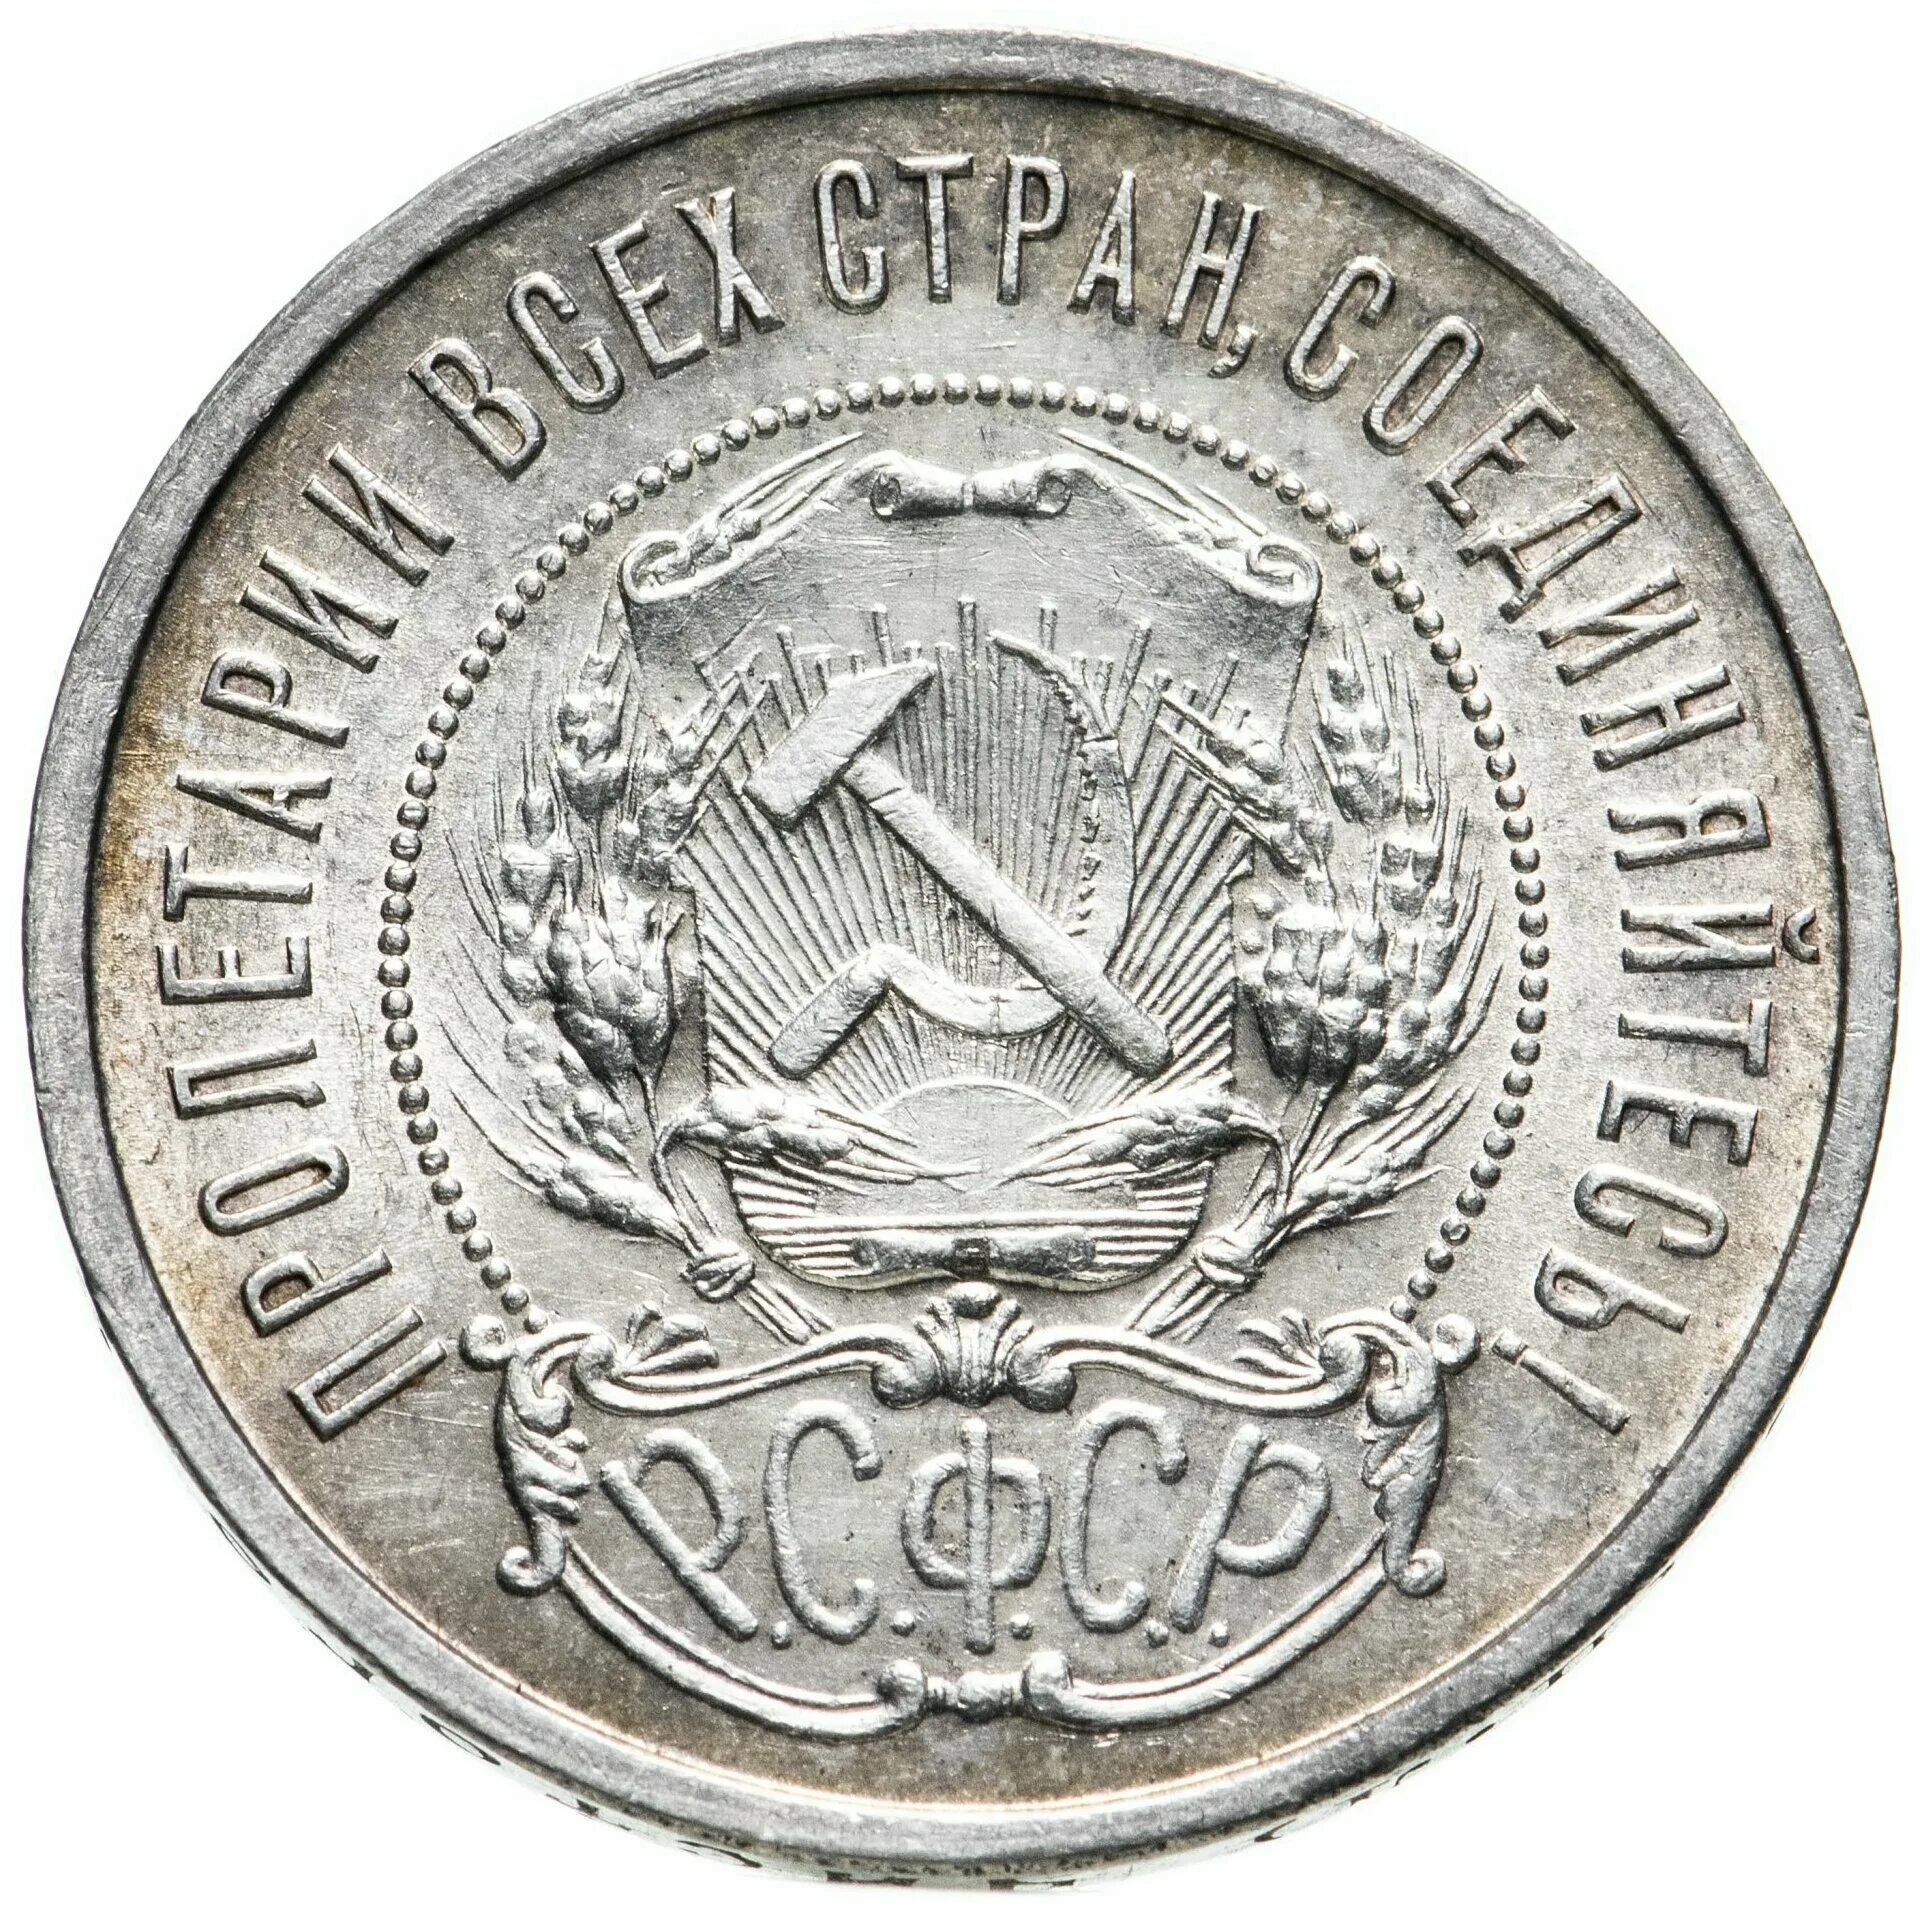 50 копеек 1922 года серебро. 50 Копеек 1922. Копейка 1922. UNC монеты что это такое. 50 Копеек пл.